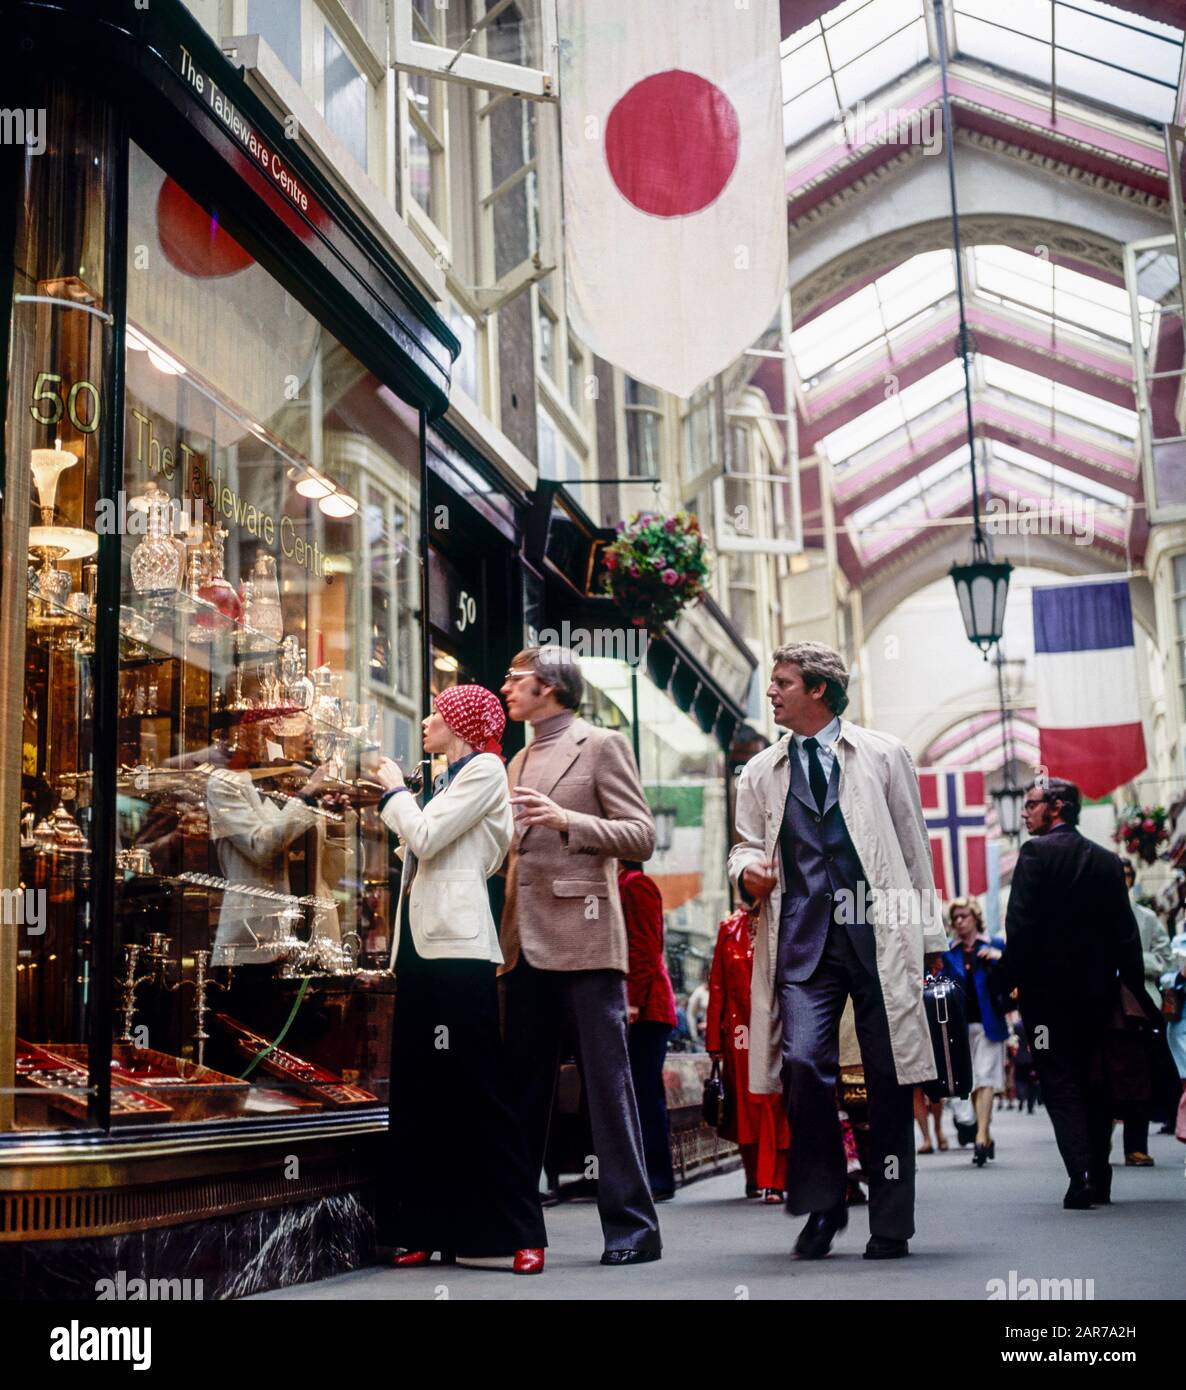 Londra 1970, elegante coppia matura per lo shopping di stoviglie, Burlington Arcade, Piccadilly, Mayfair, Inghilterra, Regno Unito, Regno Unito, Gran Bretagna, Foto Stock